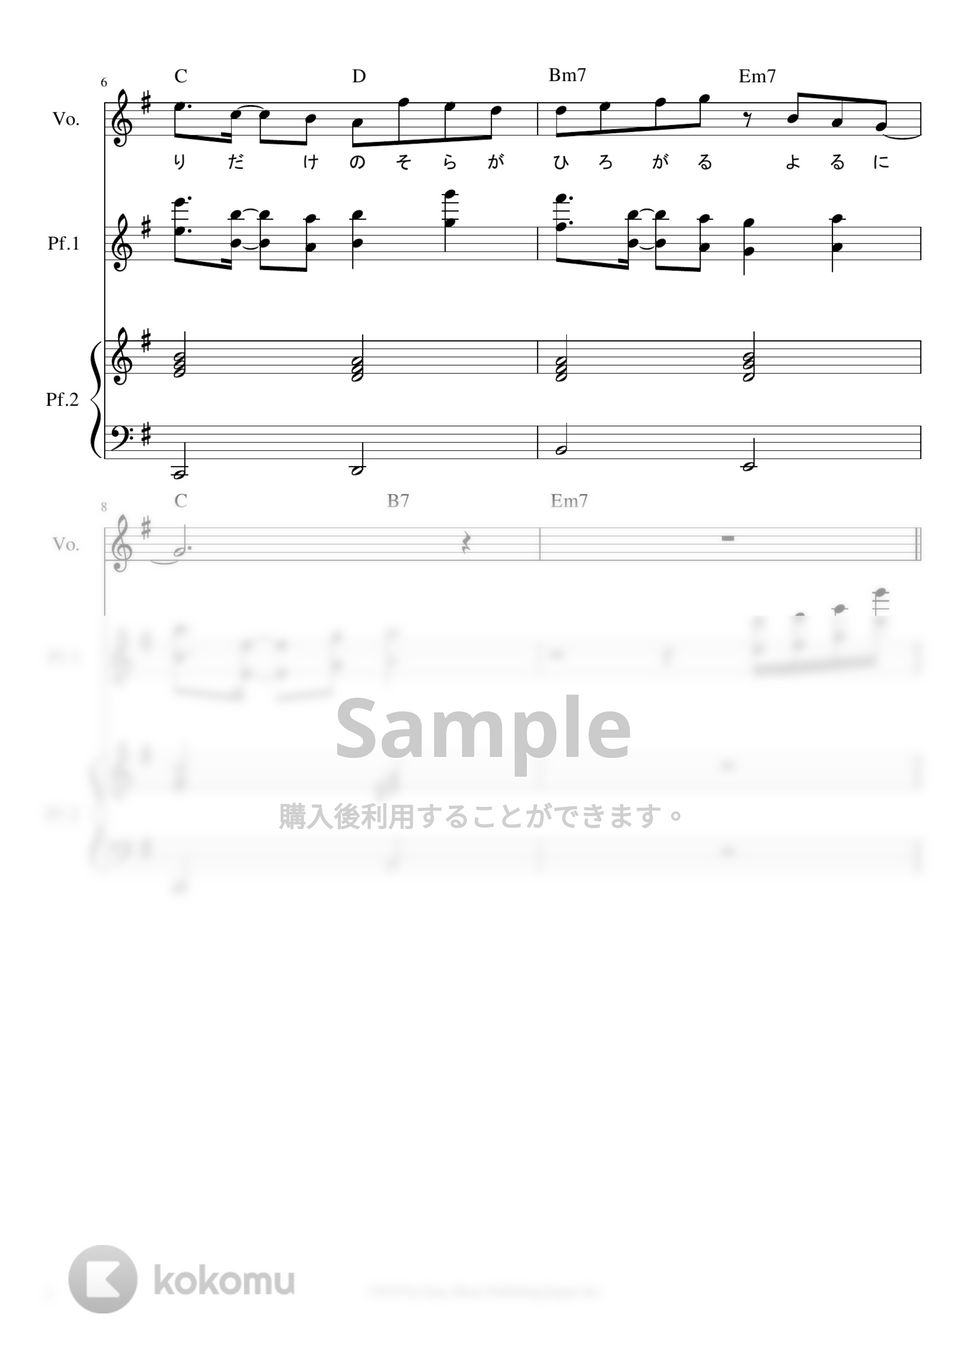 YOASOBI - 夜に駆ける ピアノパート譜※男声アレンジ (男声キーに編曲したピアノパート譜です。) by ましまし